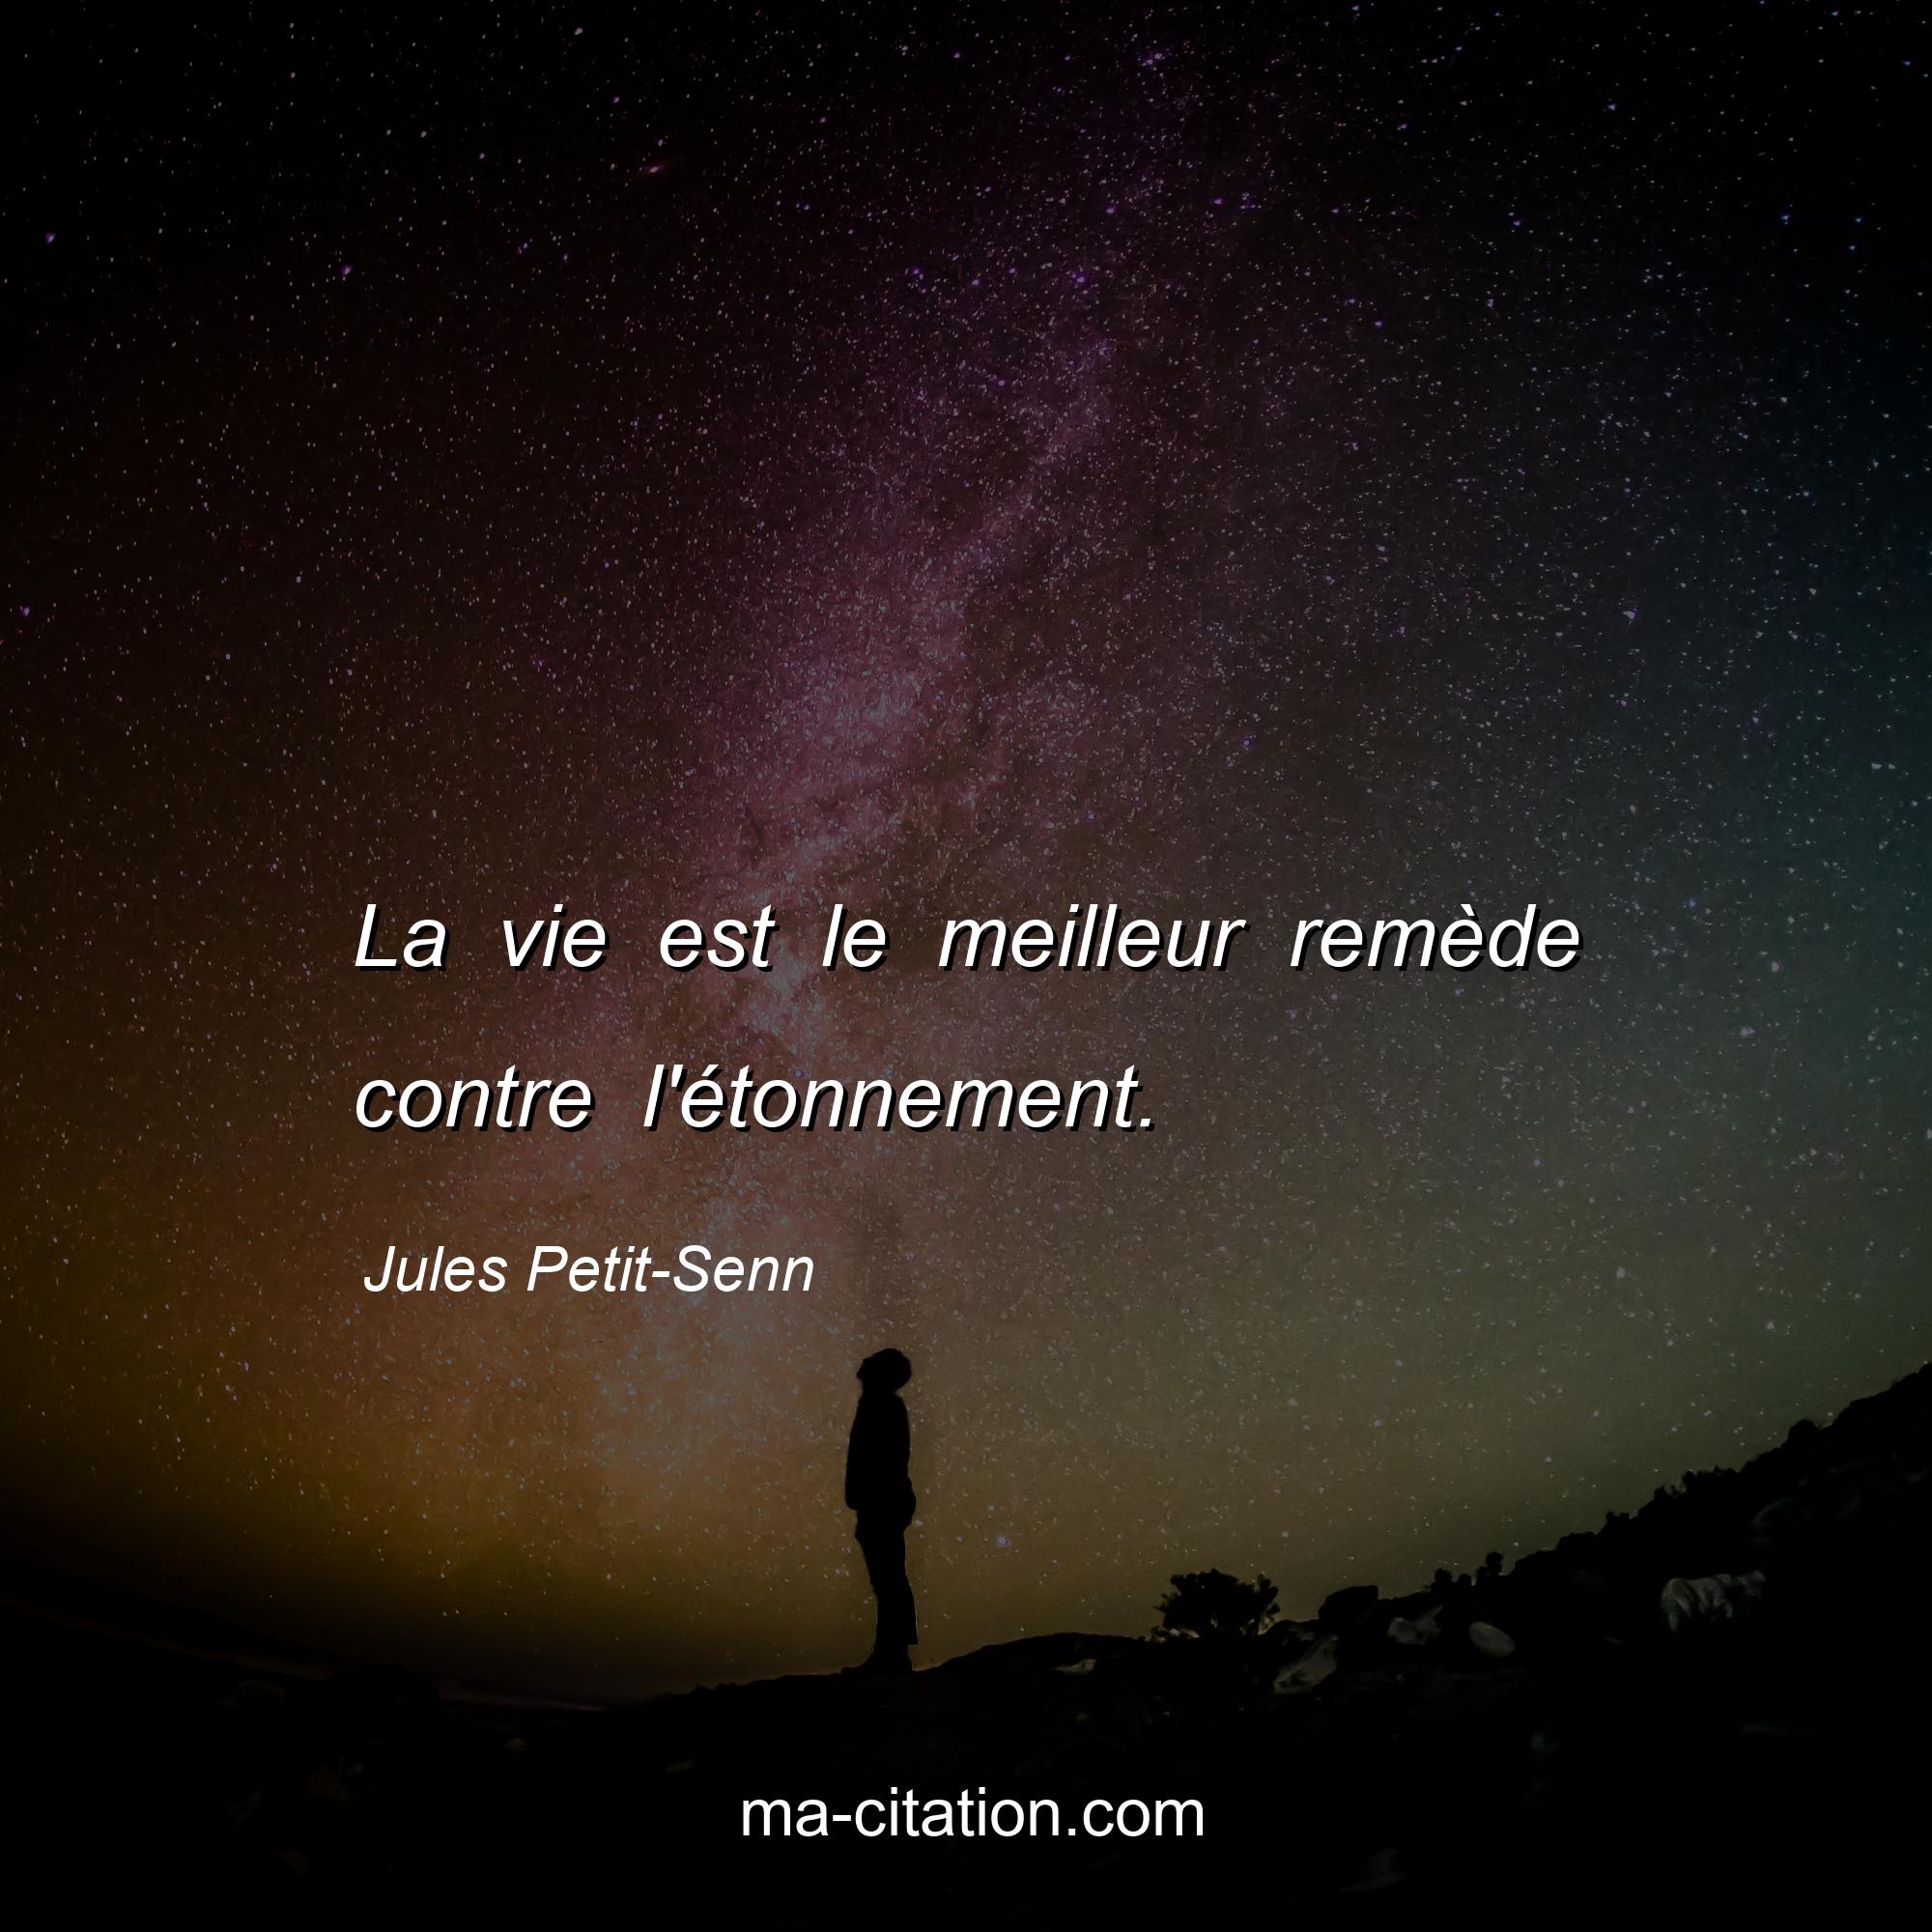 Jules Petit-Senn : La vie est le meilleur remède contre l'étonnement.